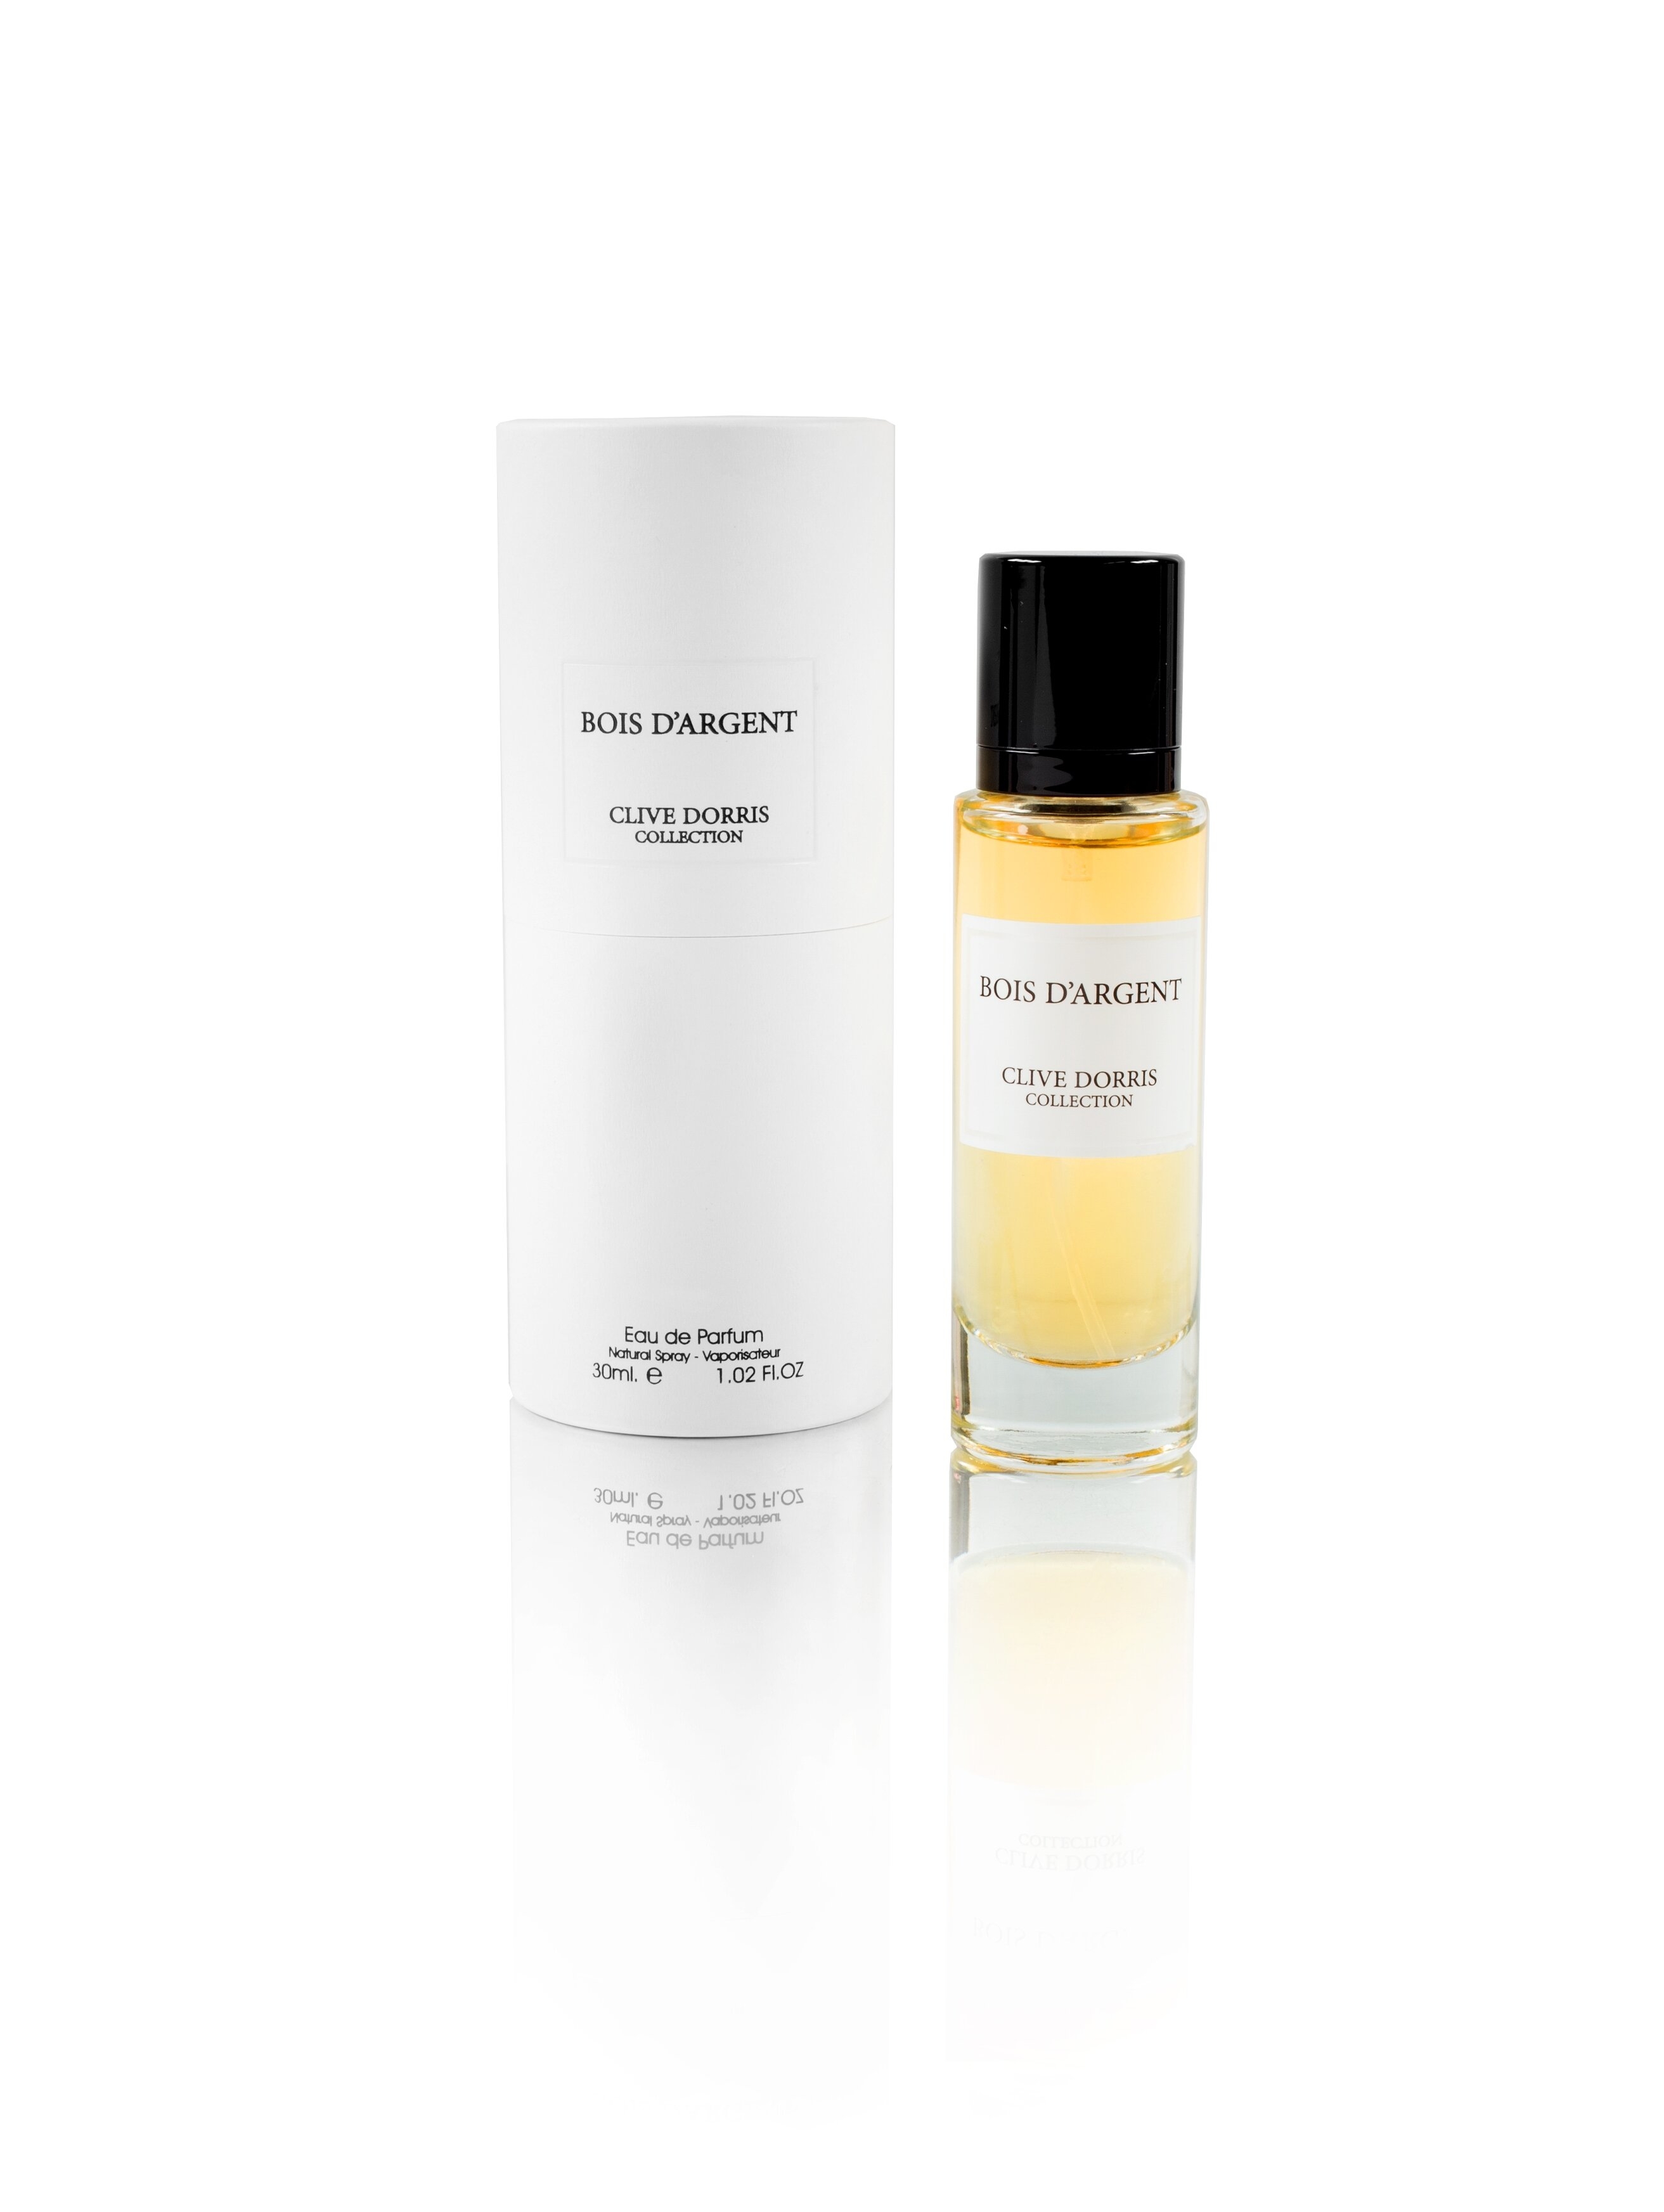 BOIS D'ARGENT (Christian Dior Bois d'Argent) Arabic perfume | Parfum Arabia